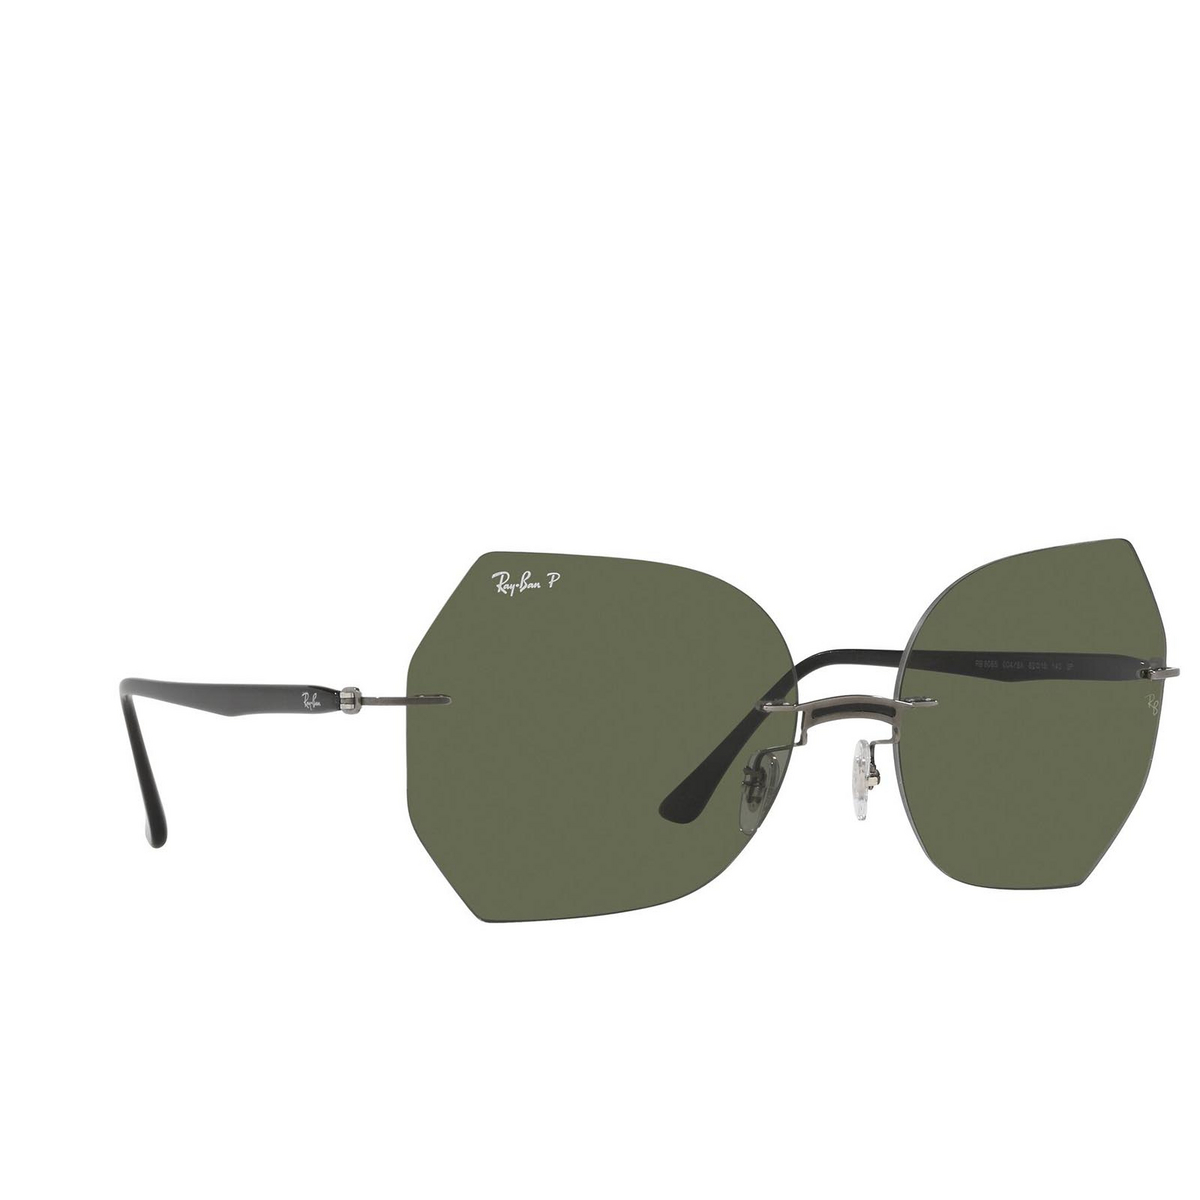 Ray-Ban RB8065 Sunglasses 004/9A Black on Gunmetal - three-quarters view